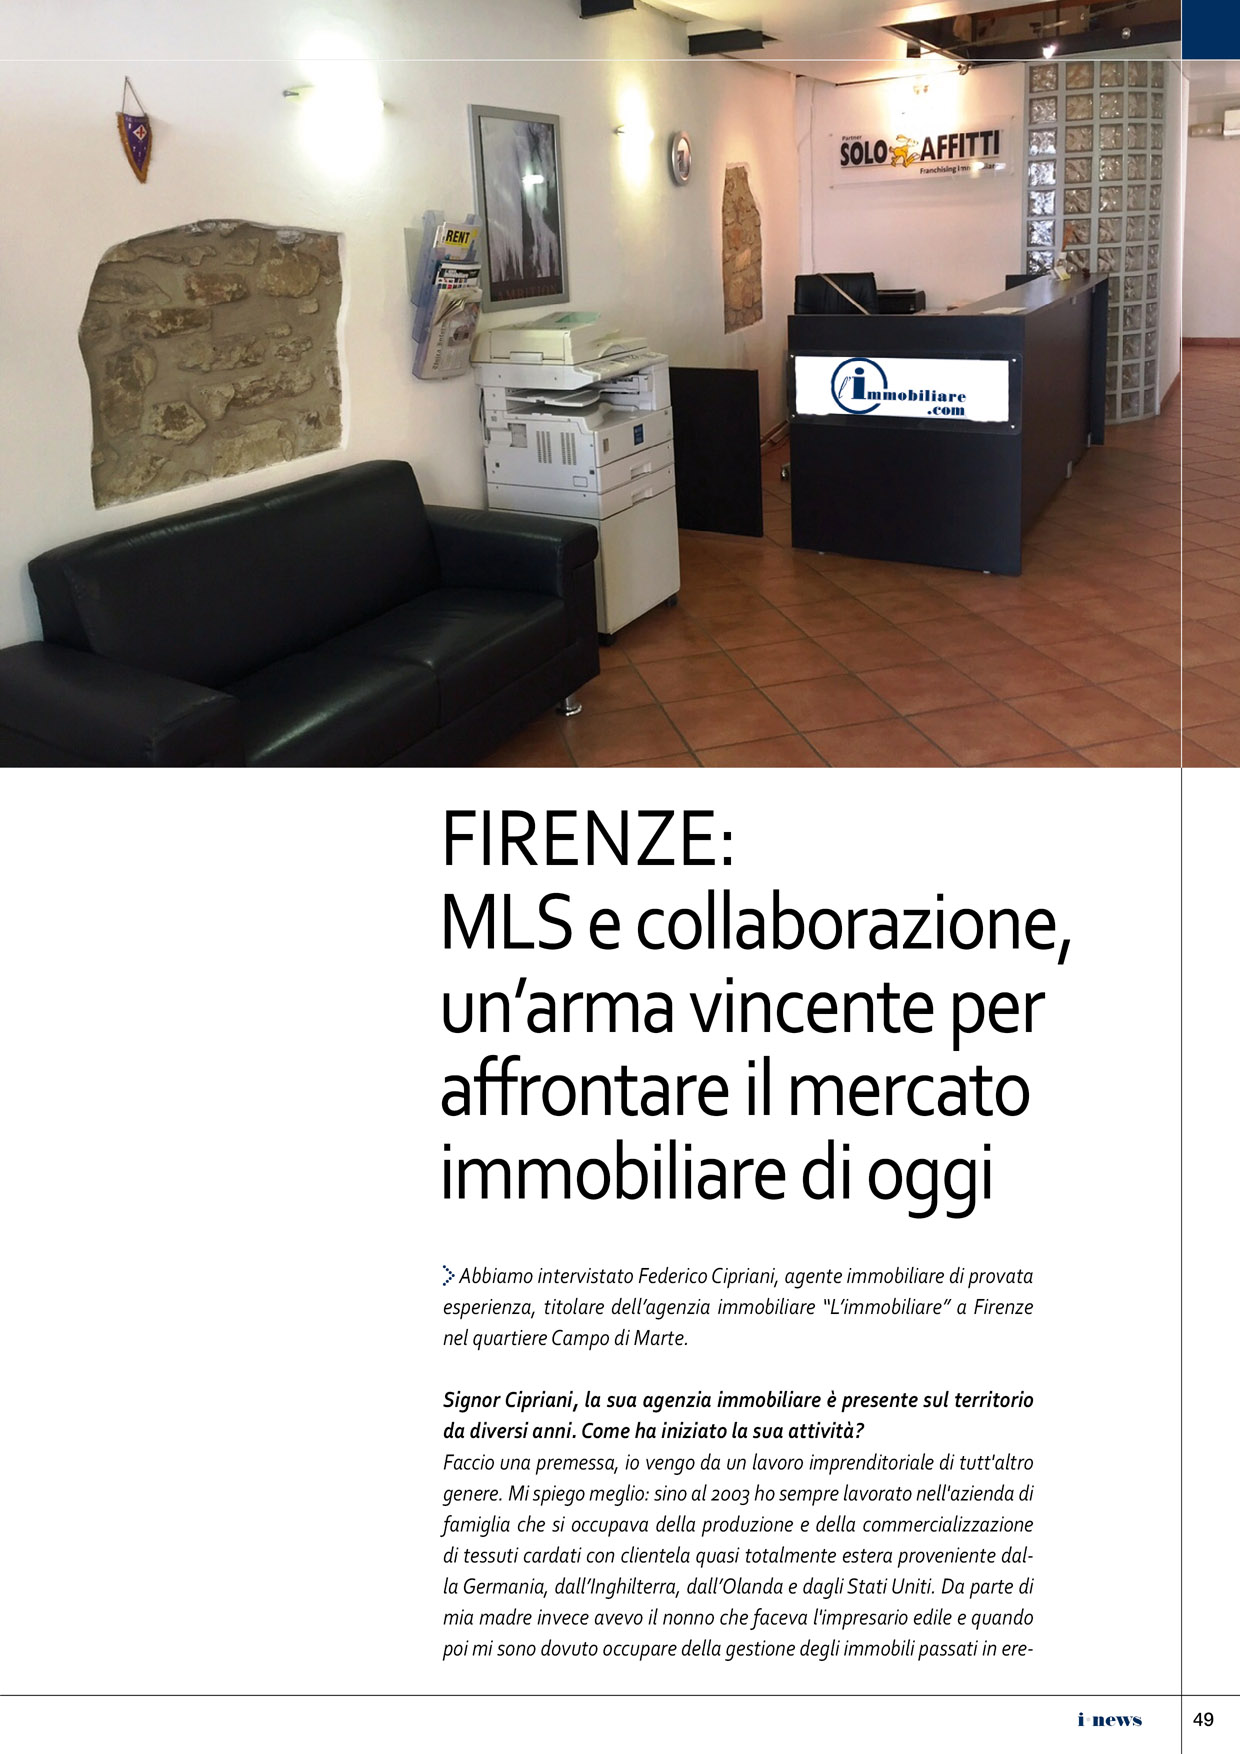 L'immobiliare.com Firenze 1